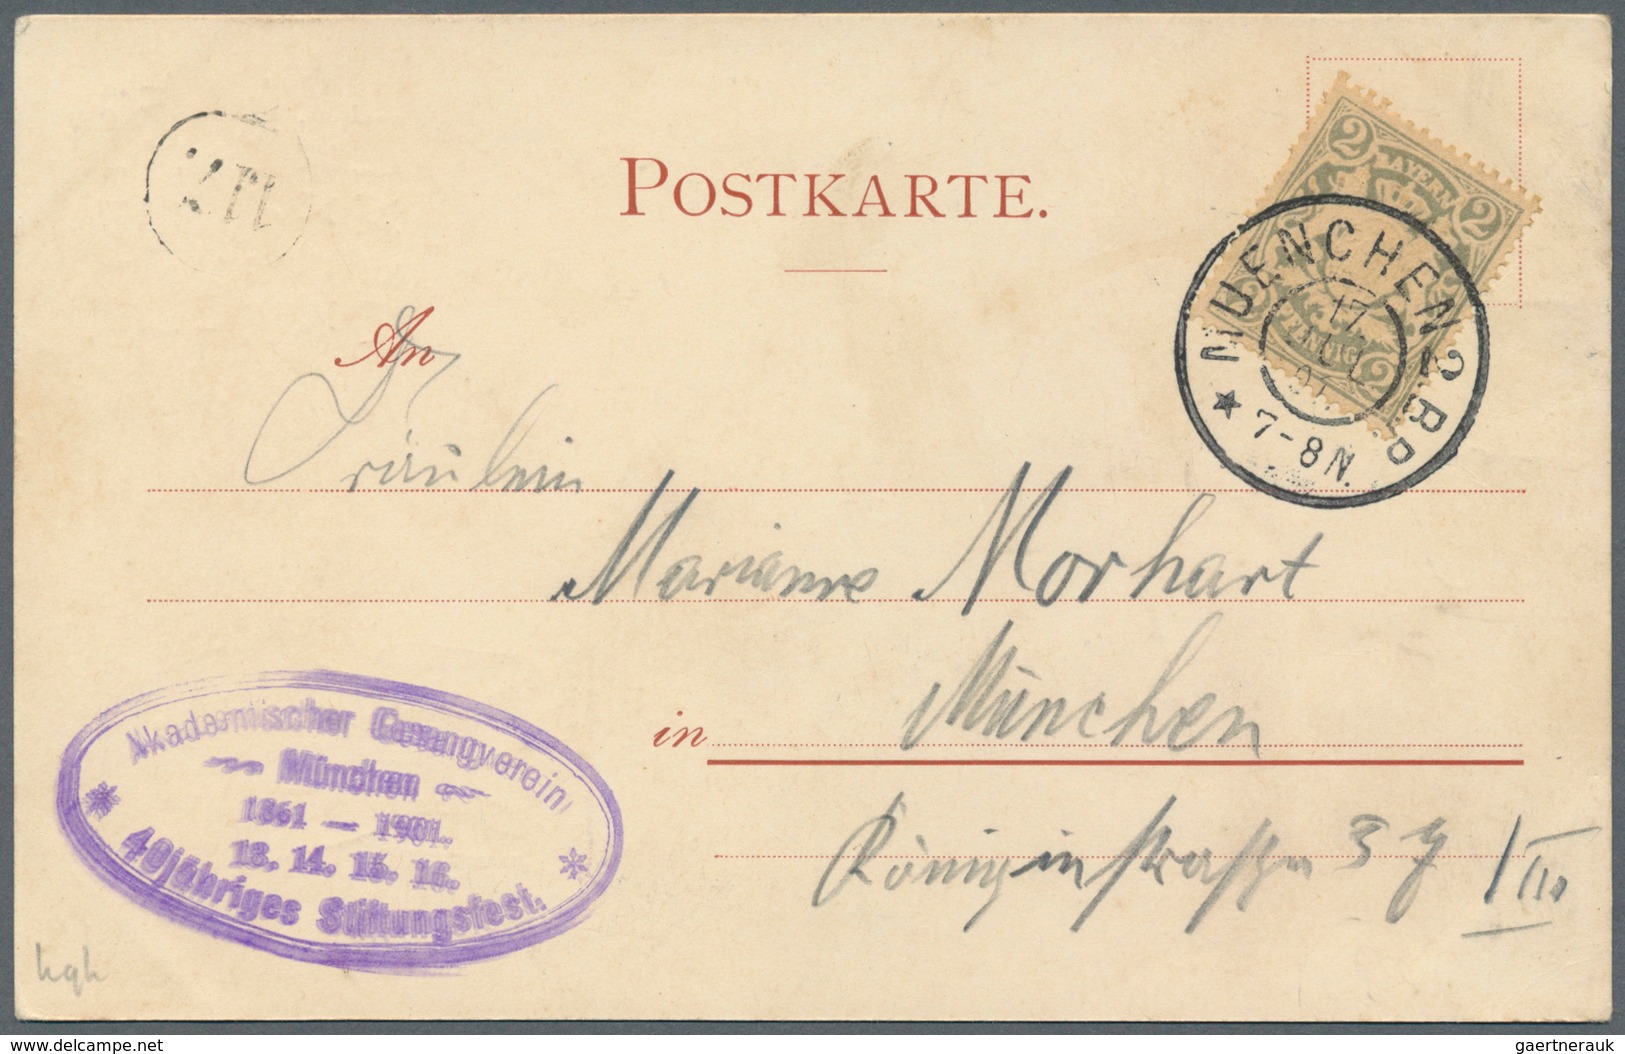 21226 Ansichtskarten: Bayern: MÜNCHEN, Akademischer Gesangsverein "Stiftungsfest 1901", 5 verschiedene Kar